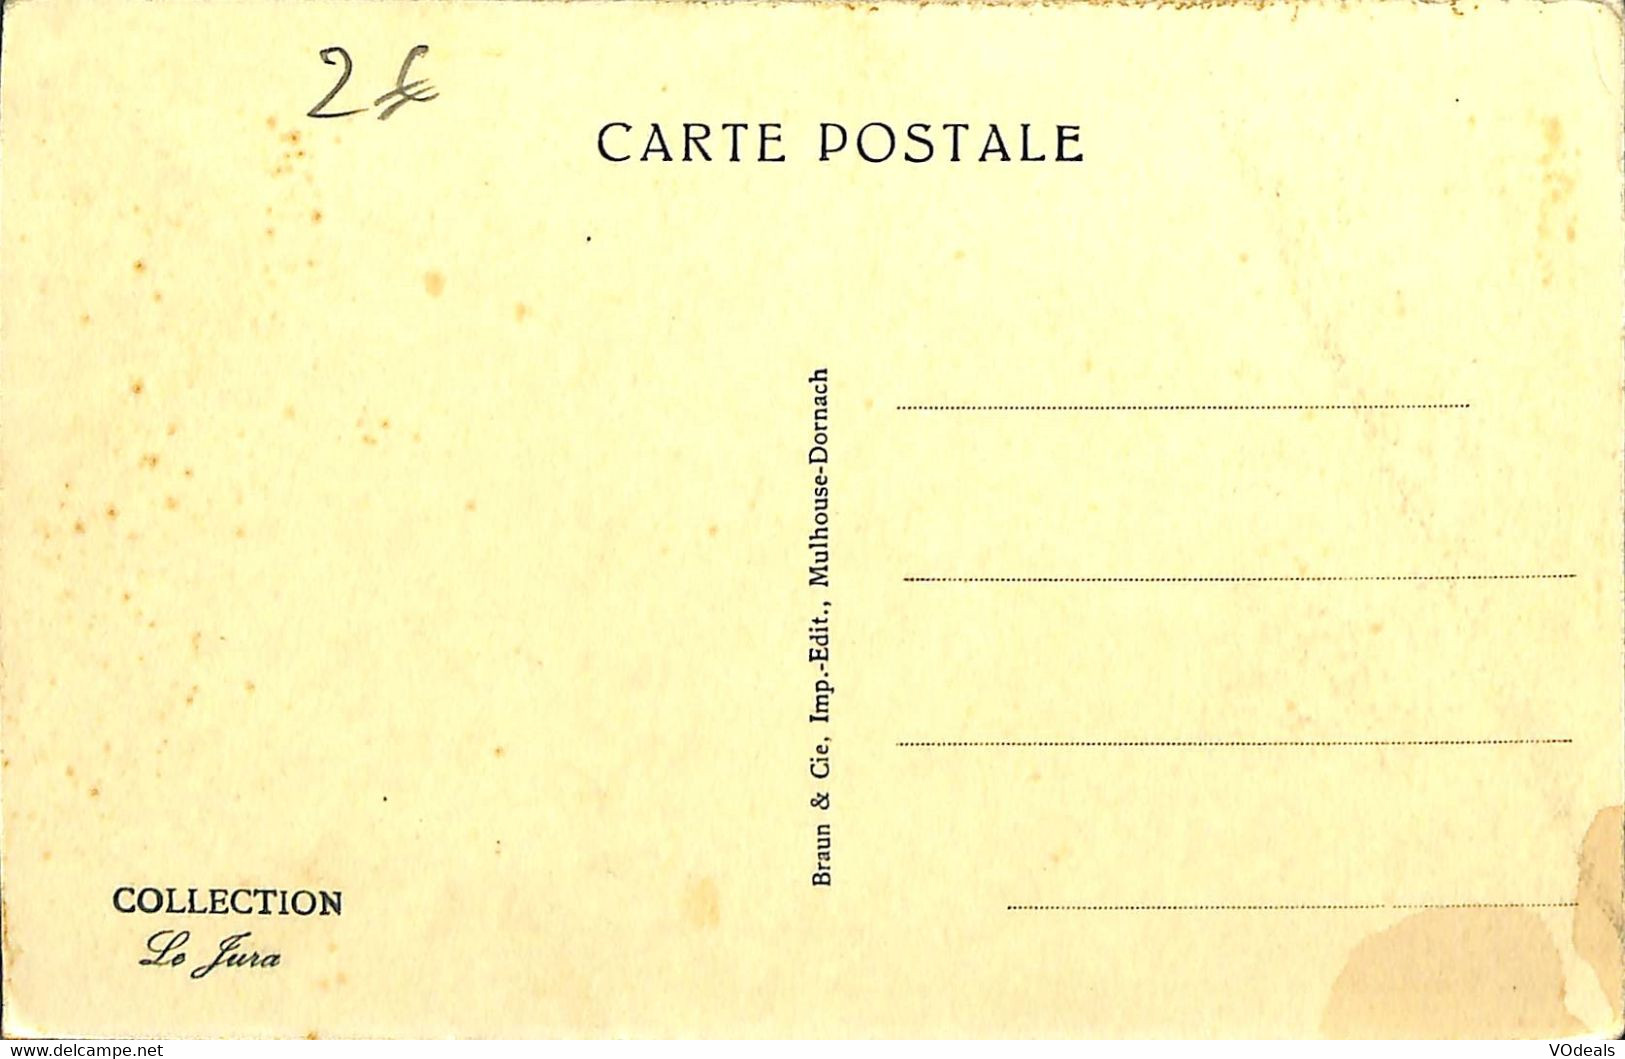 032 531 - CPA - France - Eglise - lot de 5 cartes différentes